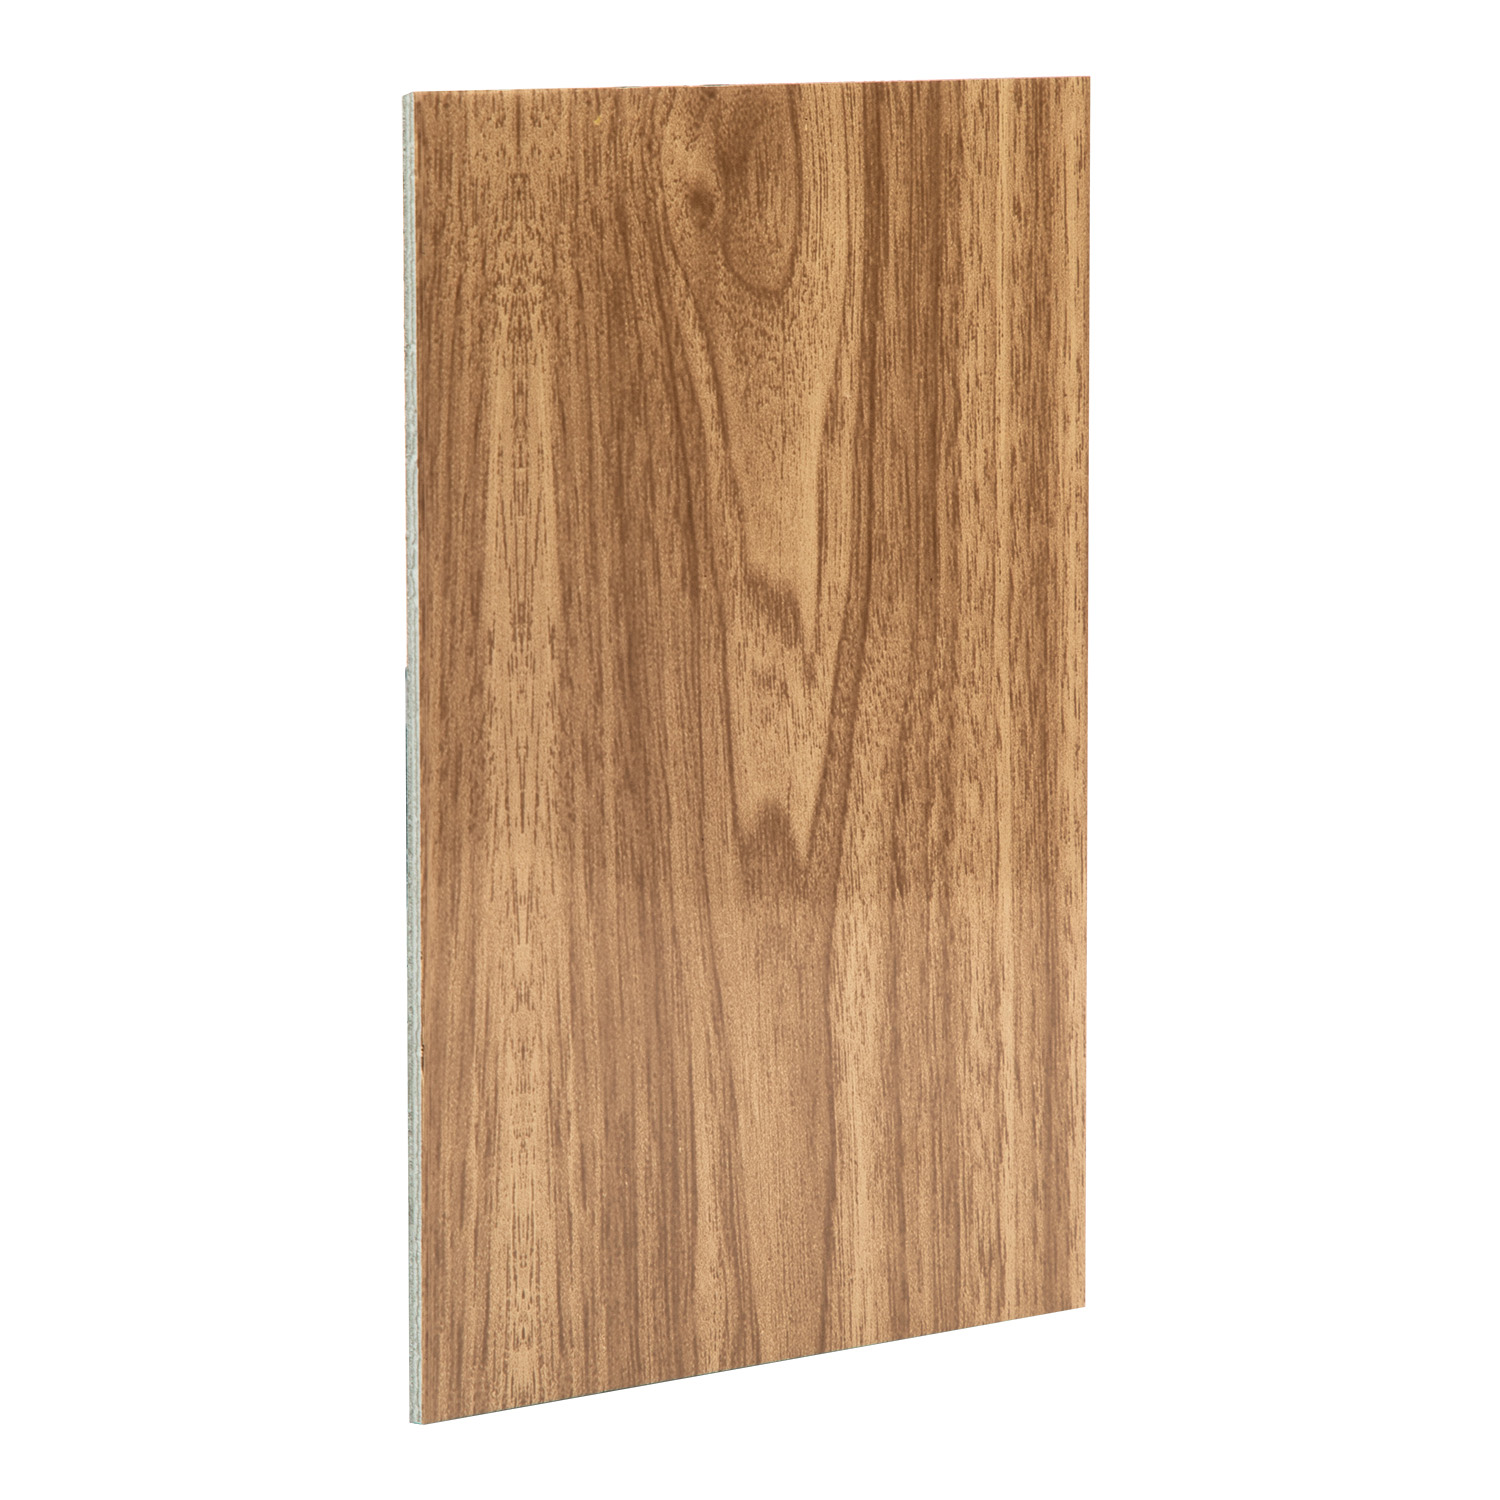 Wood Grain Aluminum Plastic Panel Aluminum Composite Panel